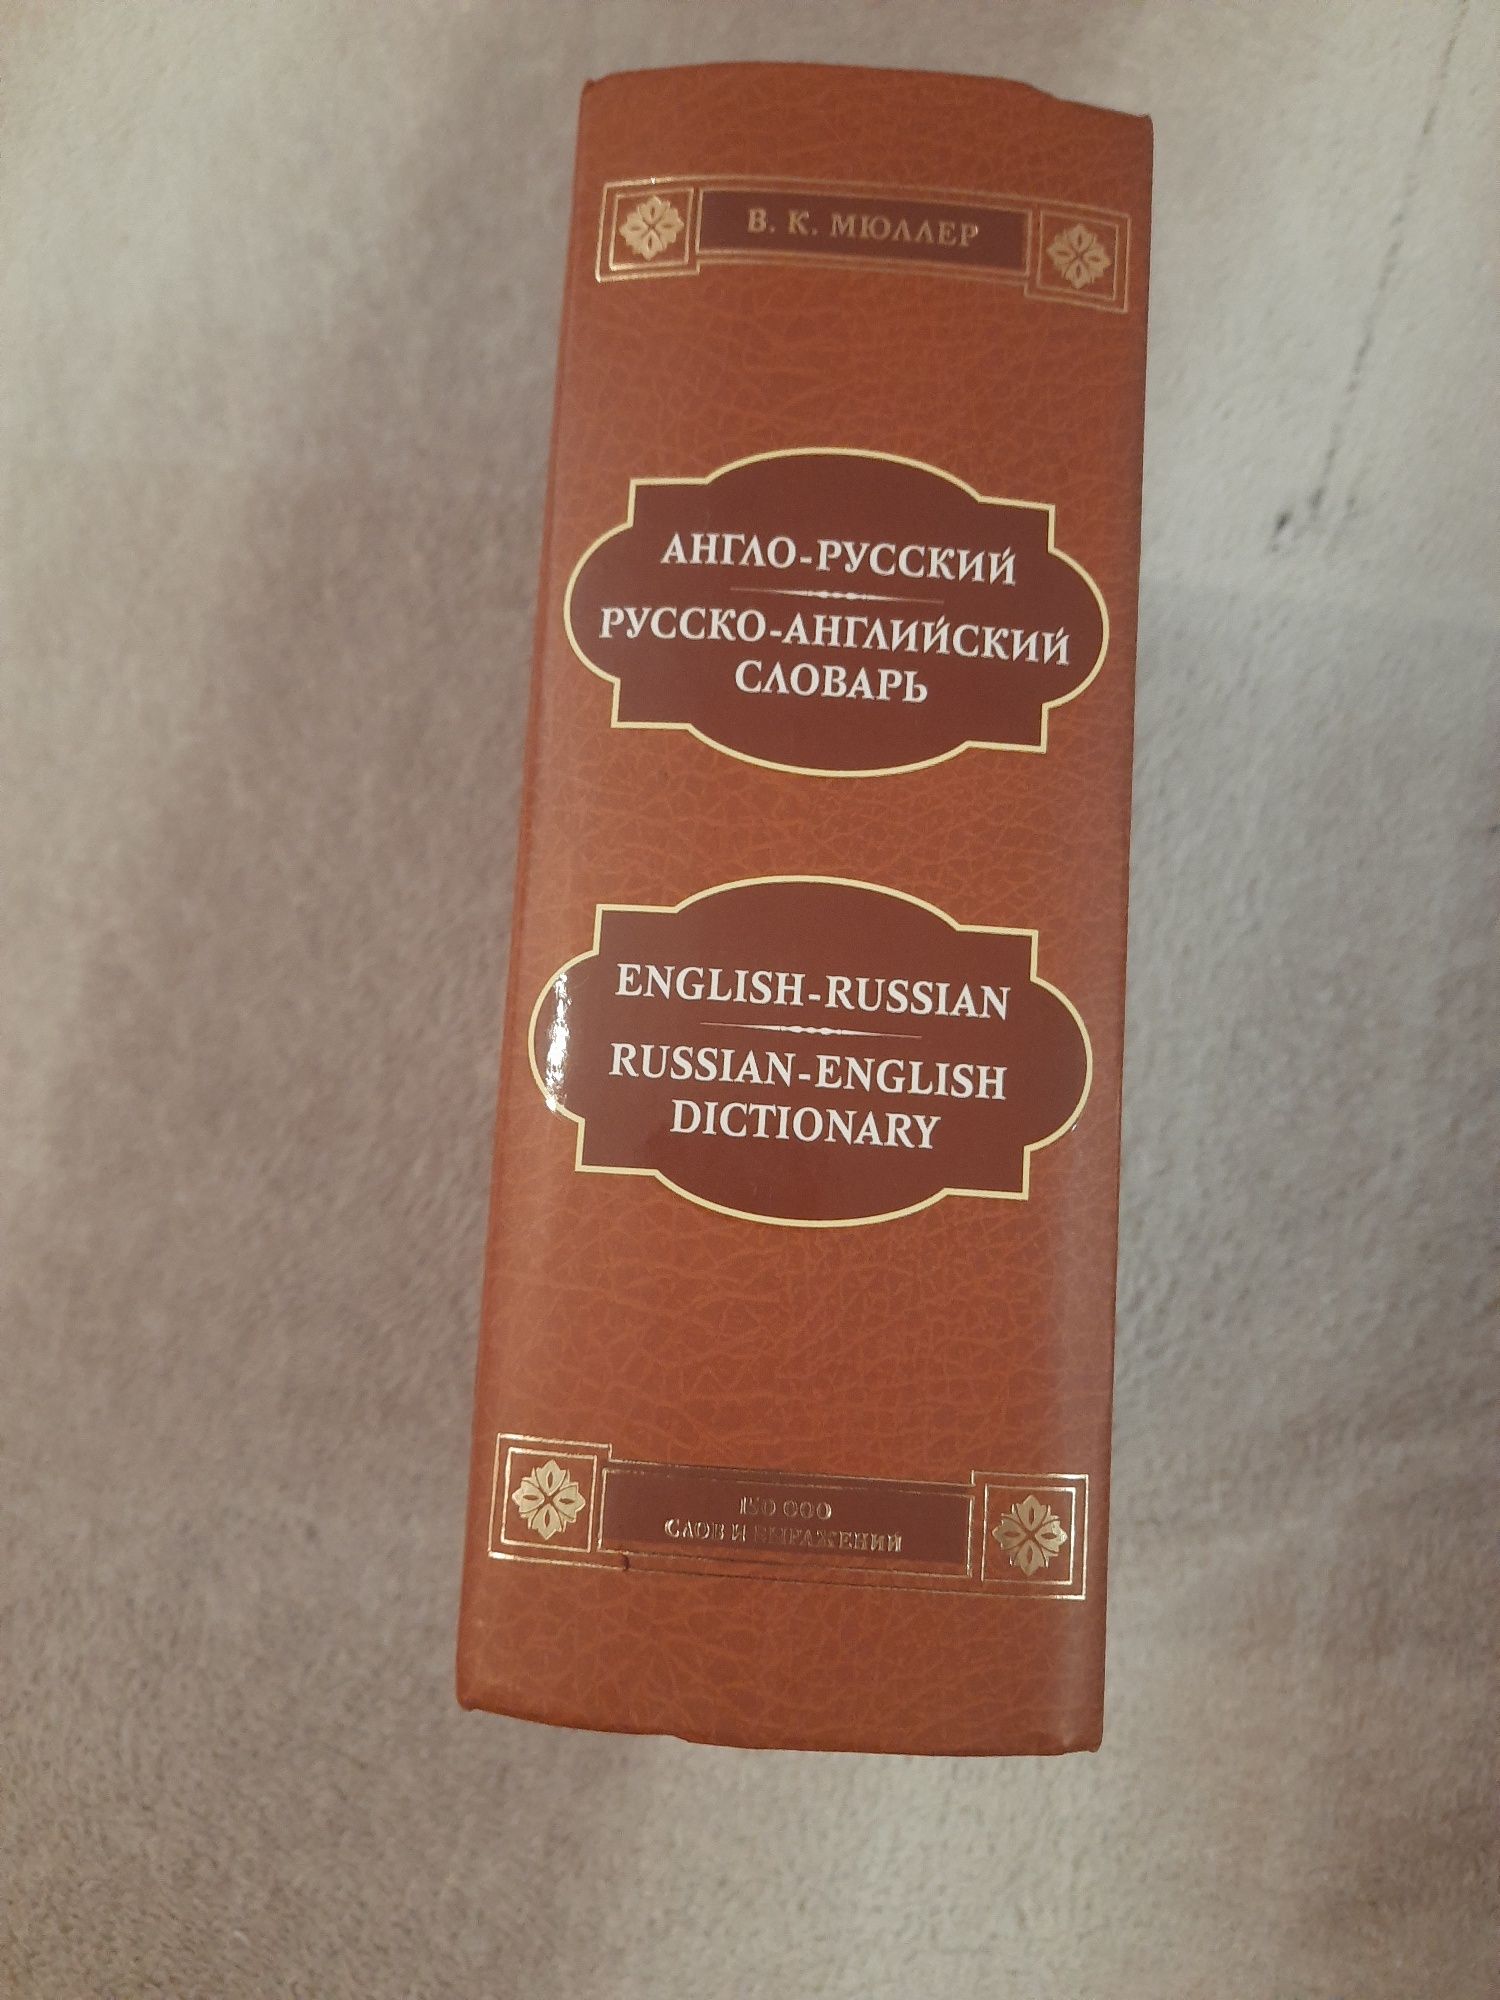 Продам словарь русско- английский